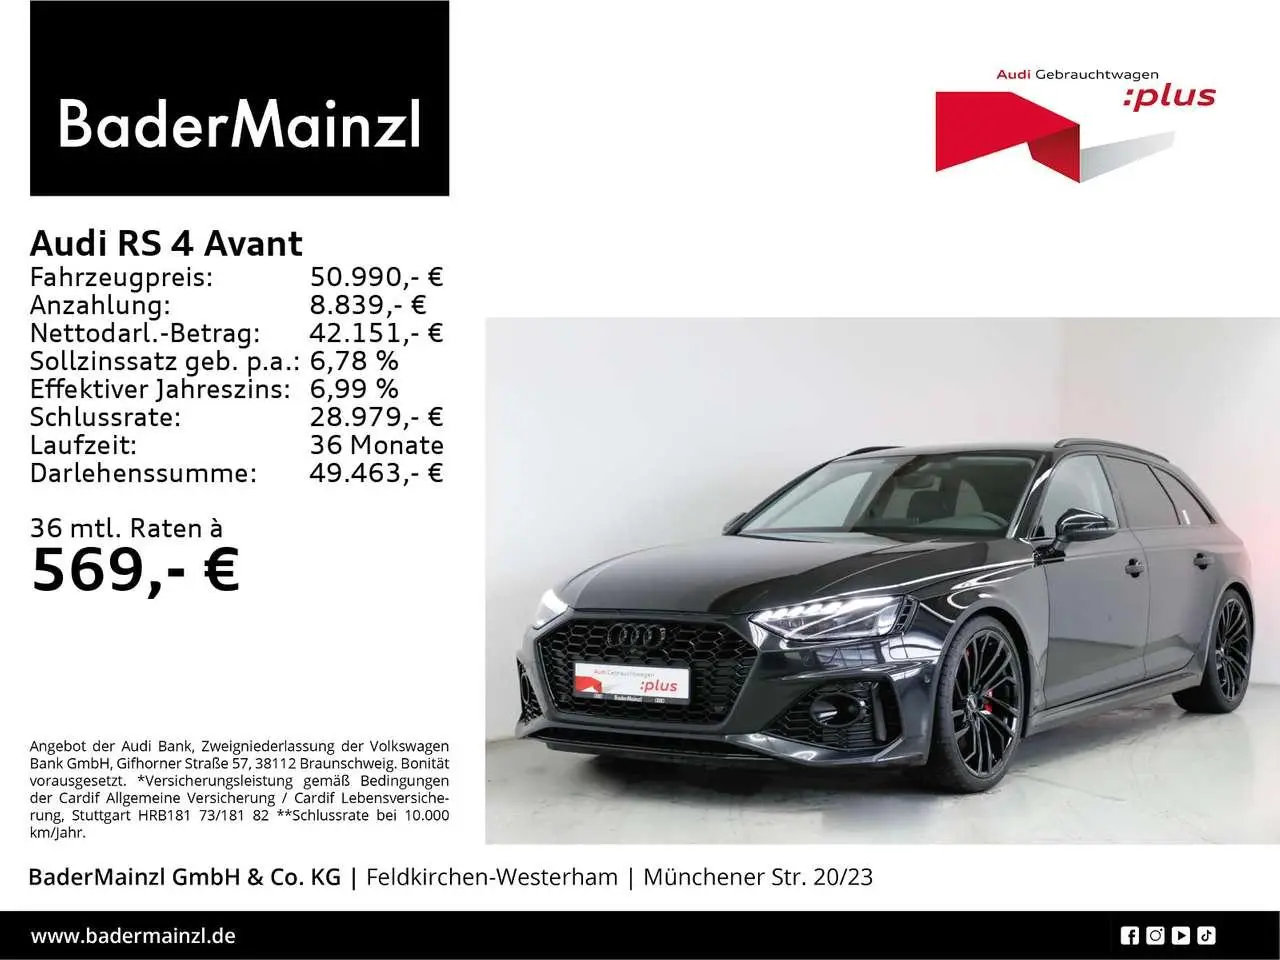 Photo 1 : Audi Rs4 2020 Petrol